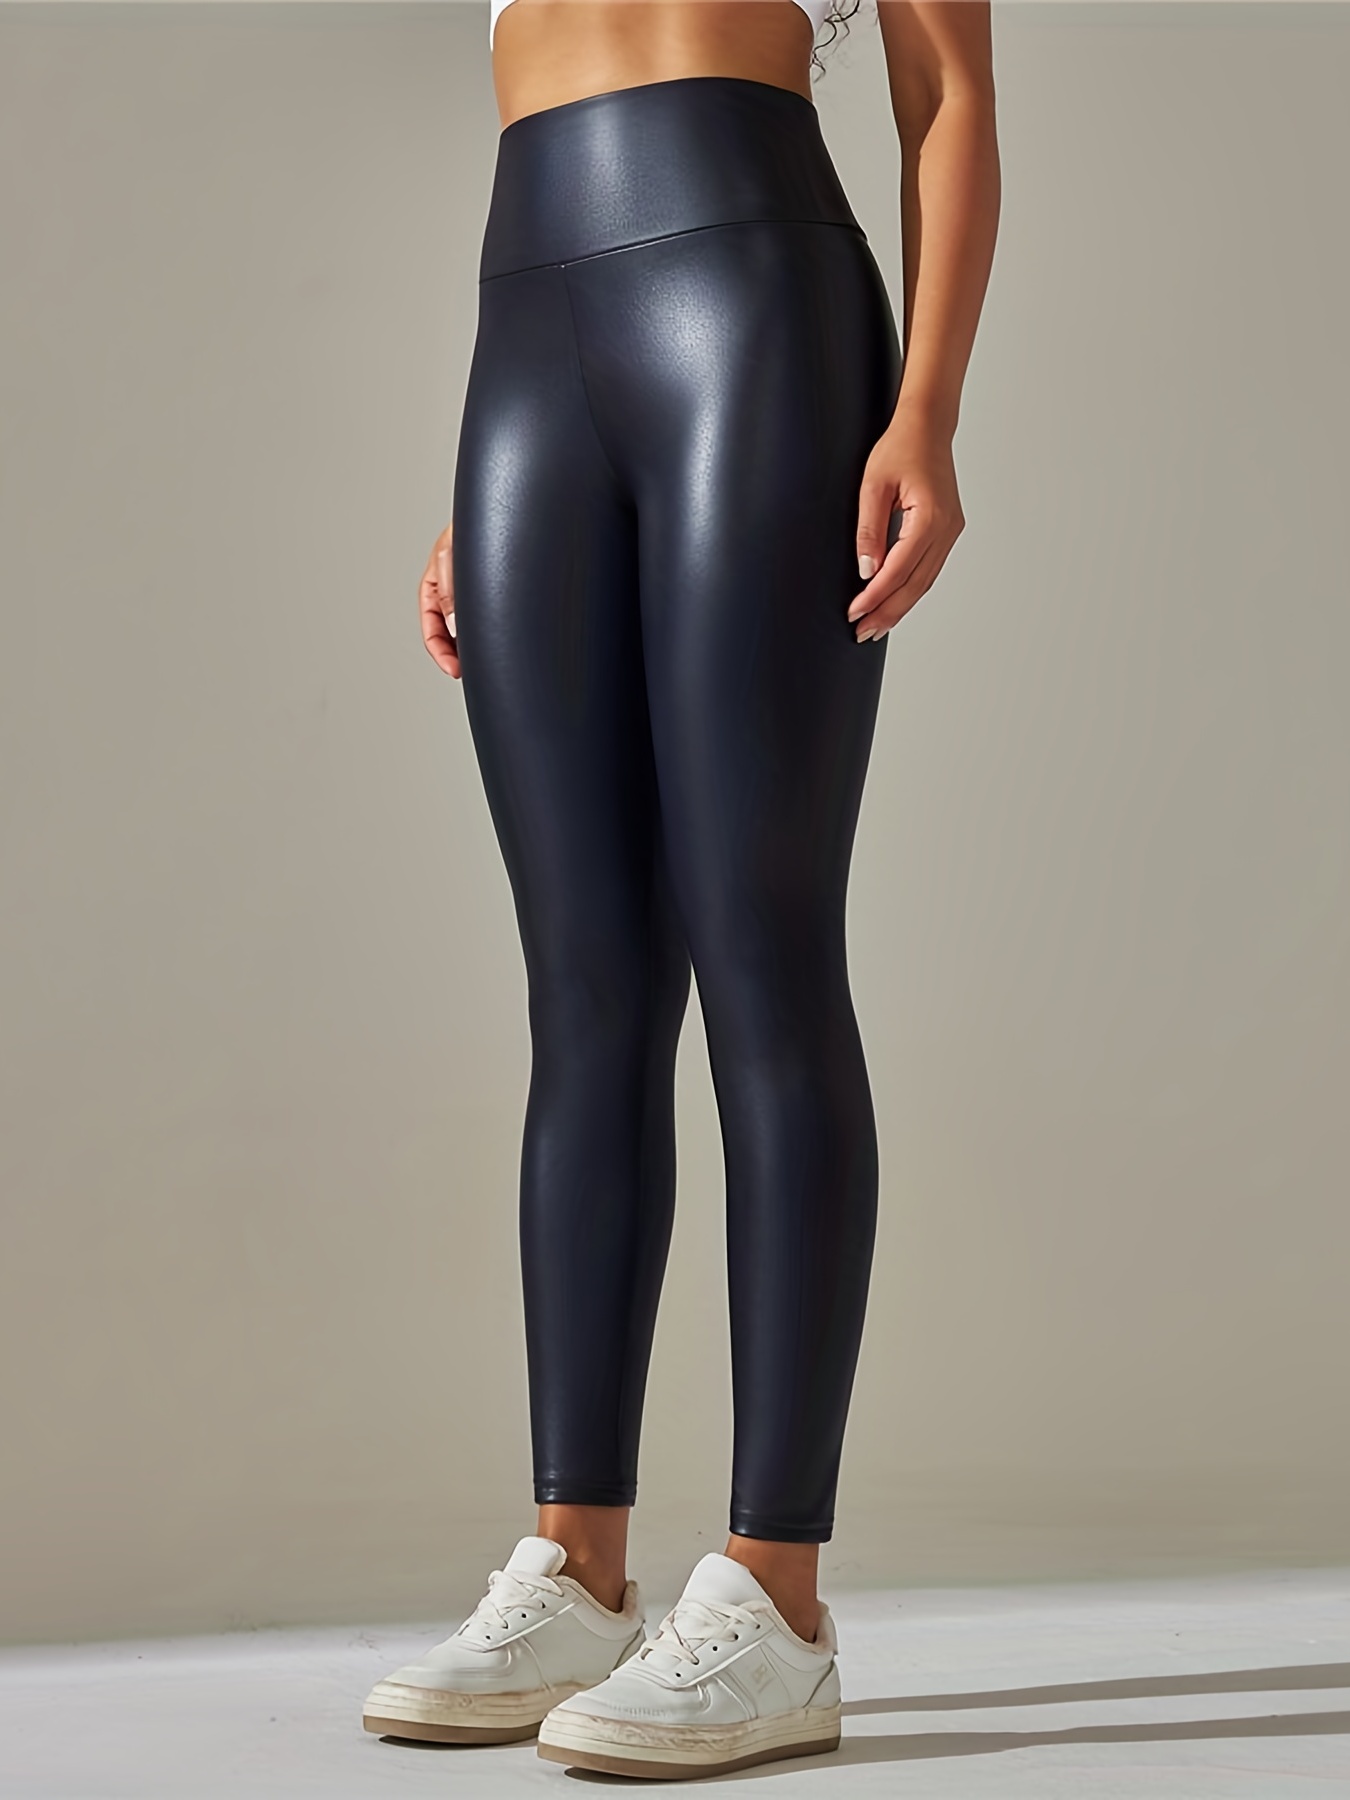 Leggings de mujer negros de imitación de cuero de cintura alta pantalones  leggings